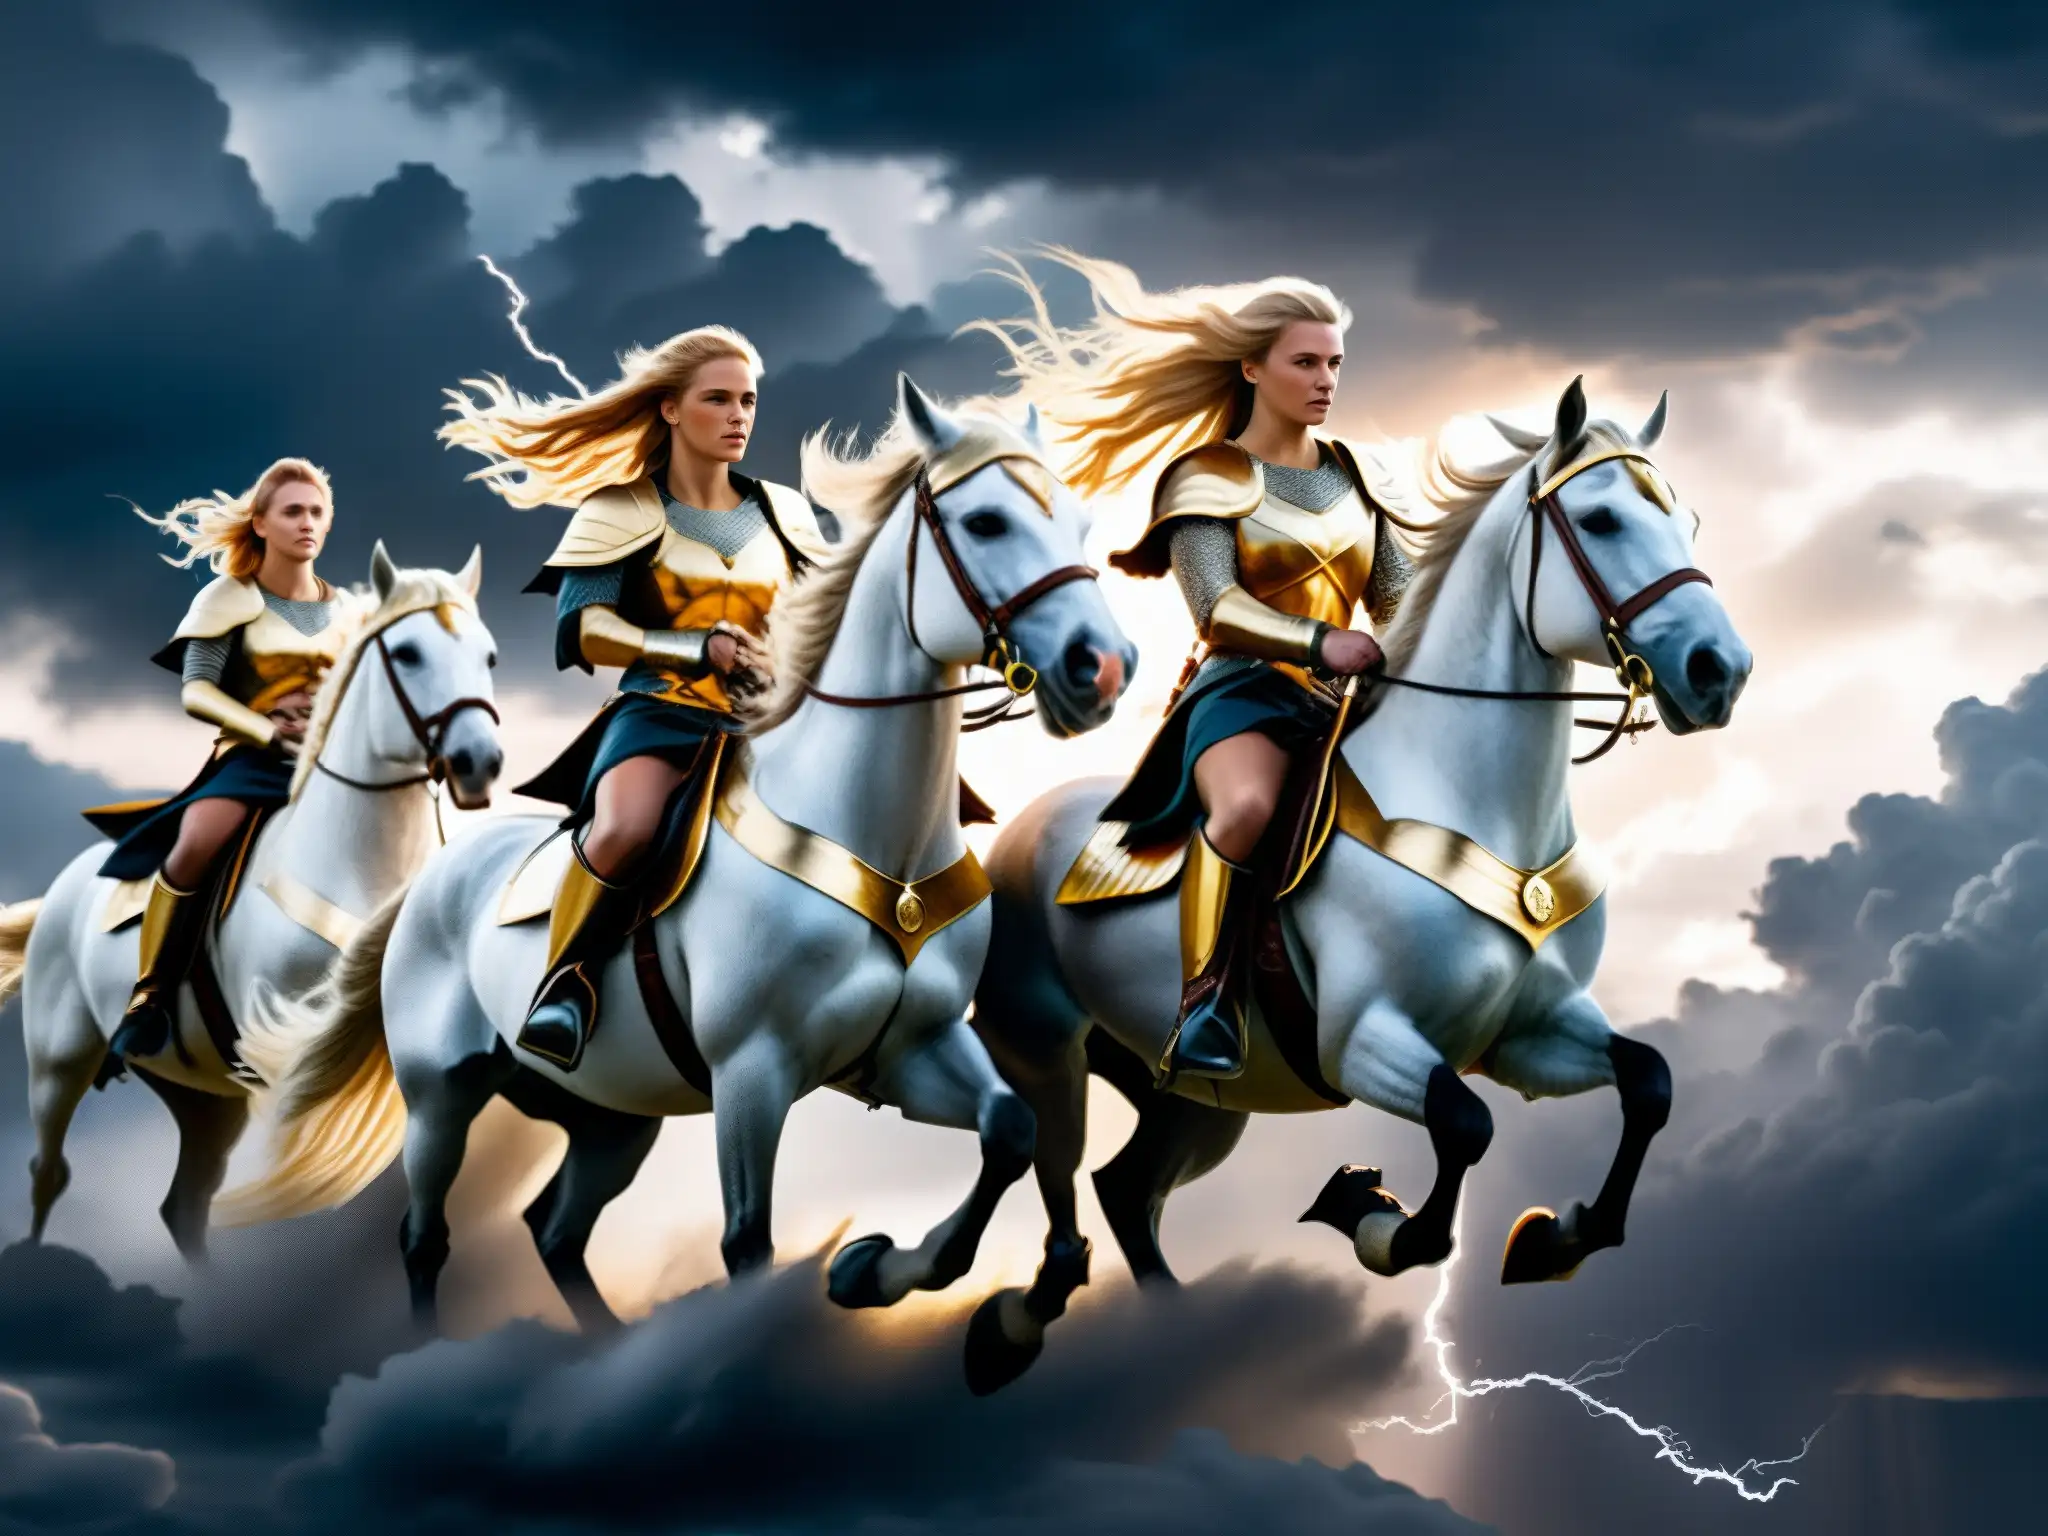 Valquirias en el destino vikingo: grupo de valquirias en armadura nórdica, cabalgando en caballos alados bajo un cielo tormentoso y dramático